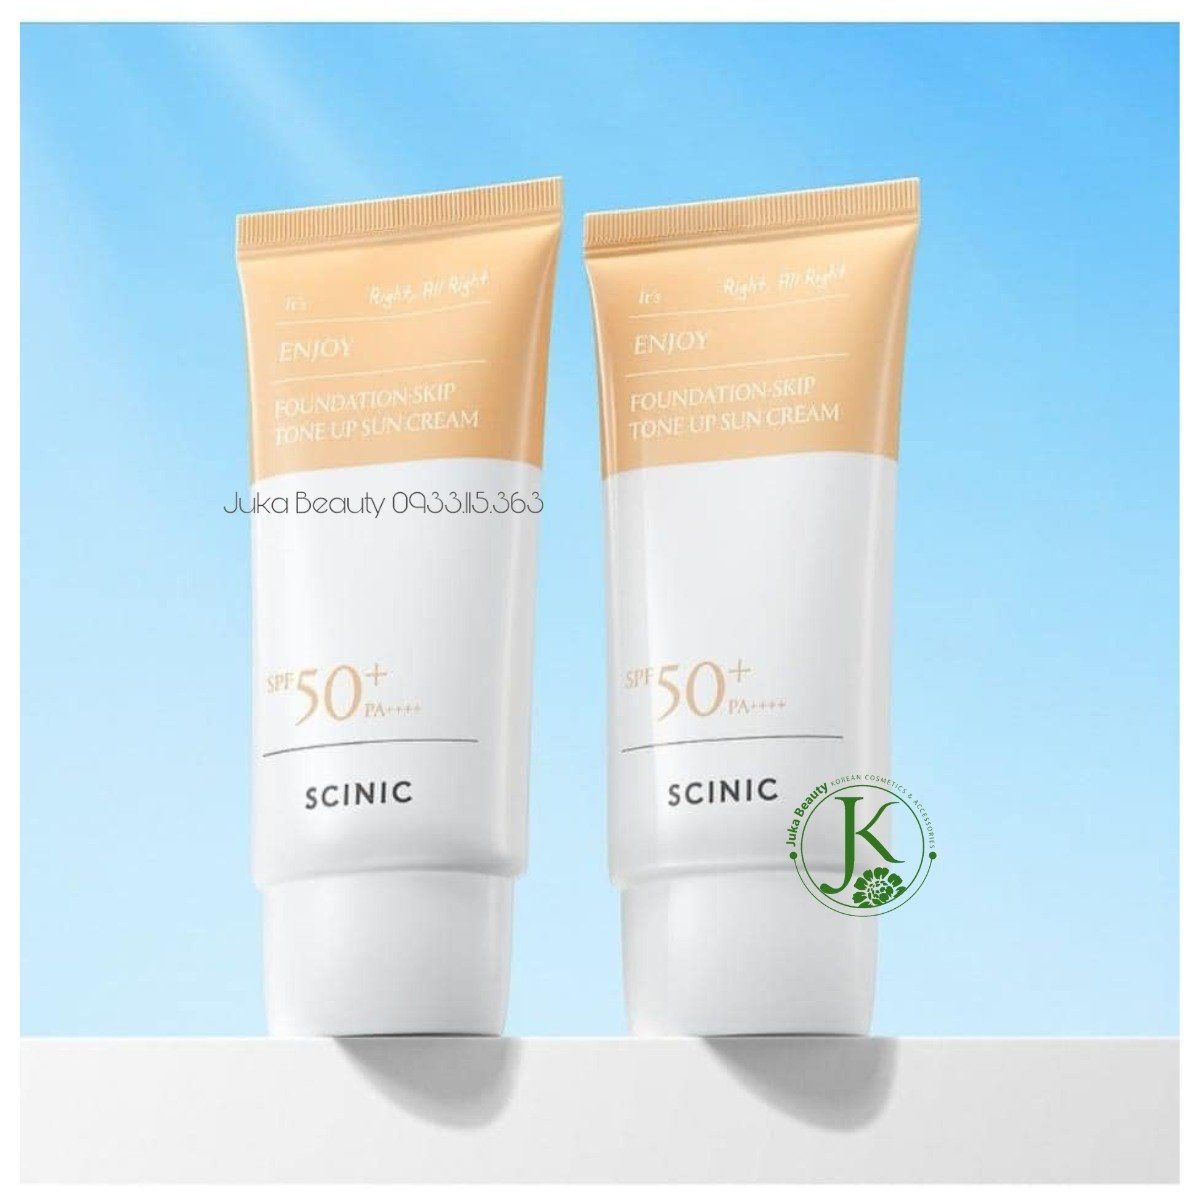  Kem Chống Nắng Nâng Tone Tự Nhiên Scinic Enjoy Foundation Skip Tone Up Sun Cream SPF50+ PA++++ 50g 